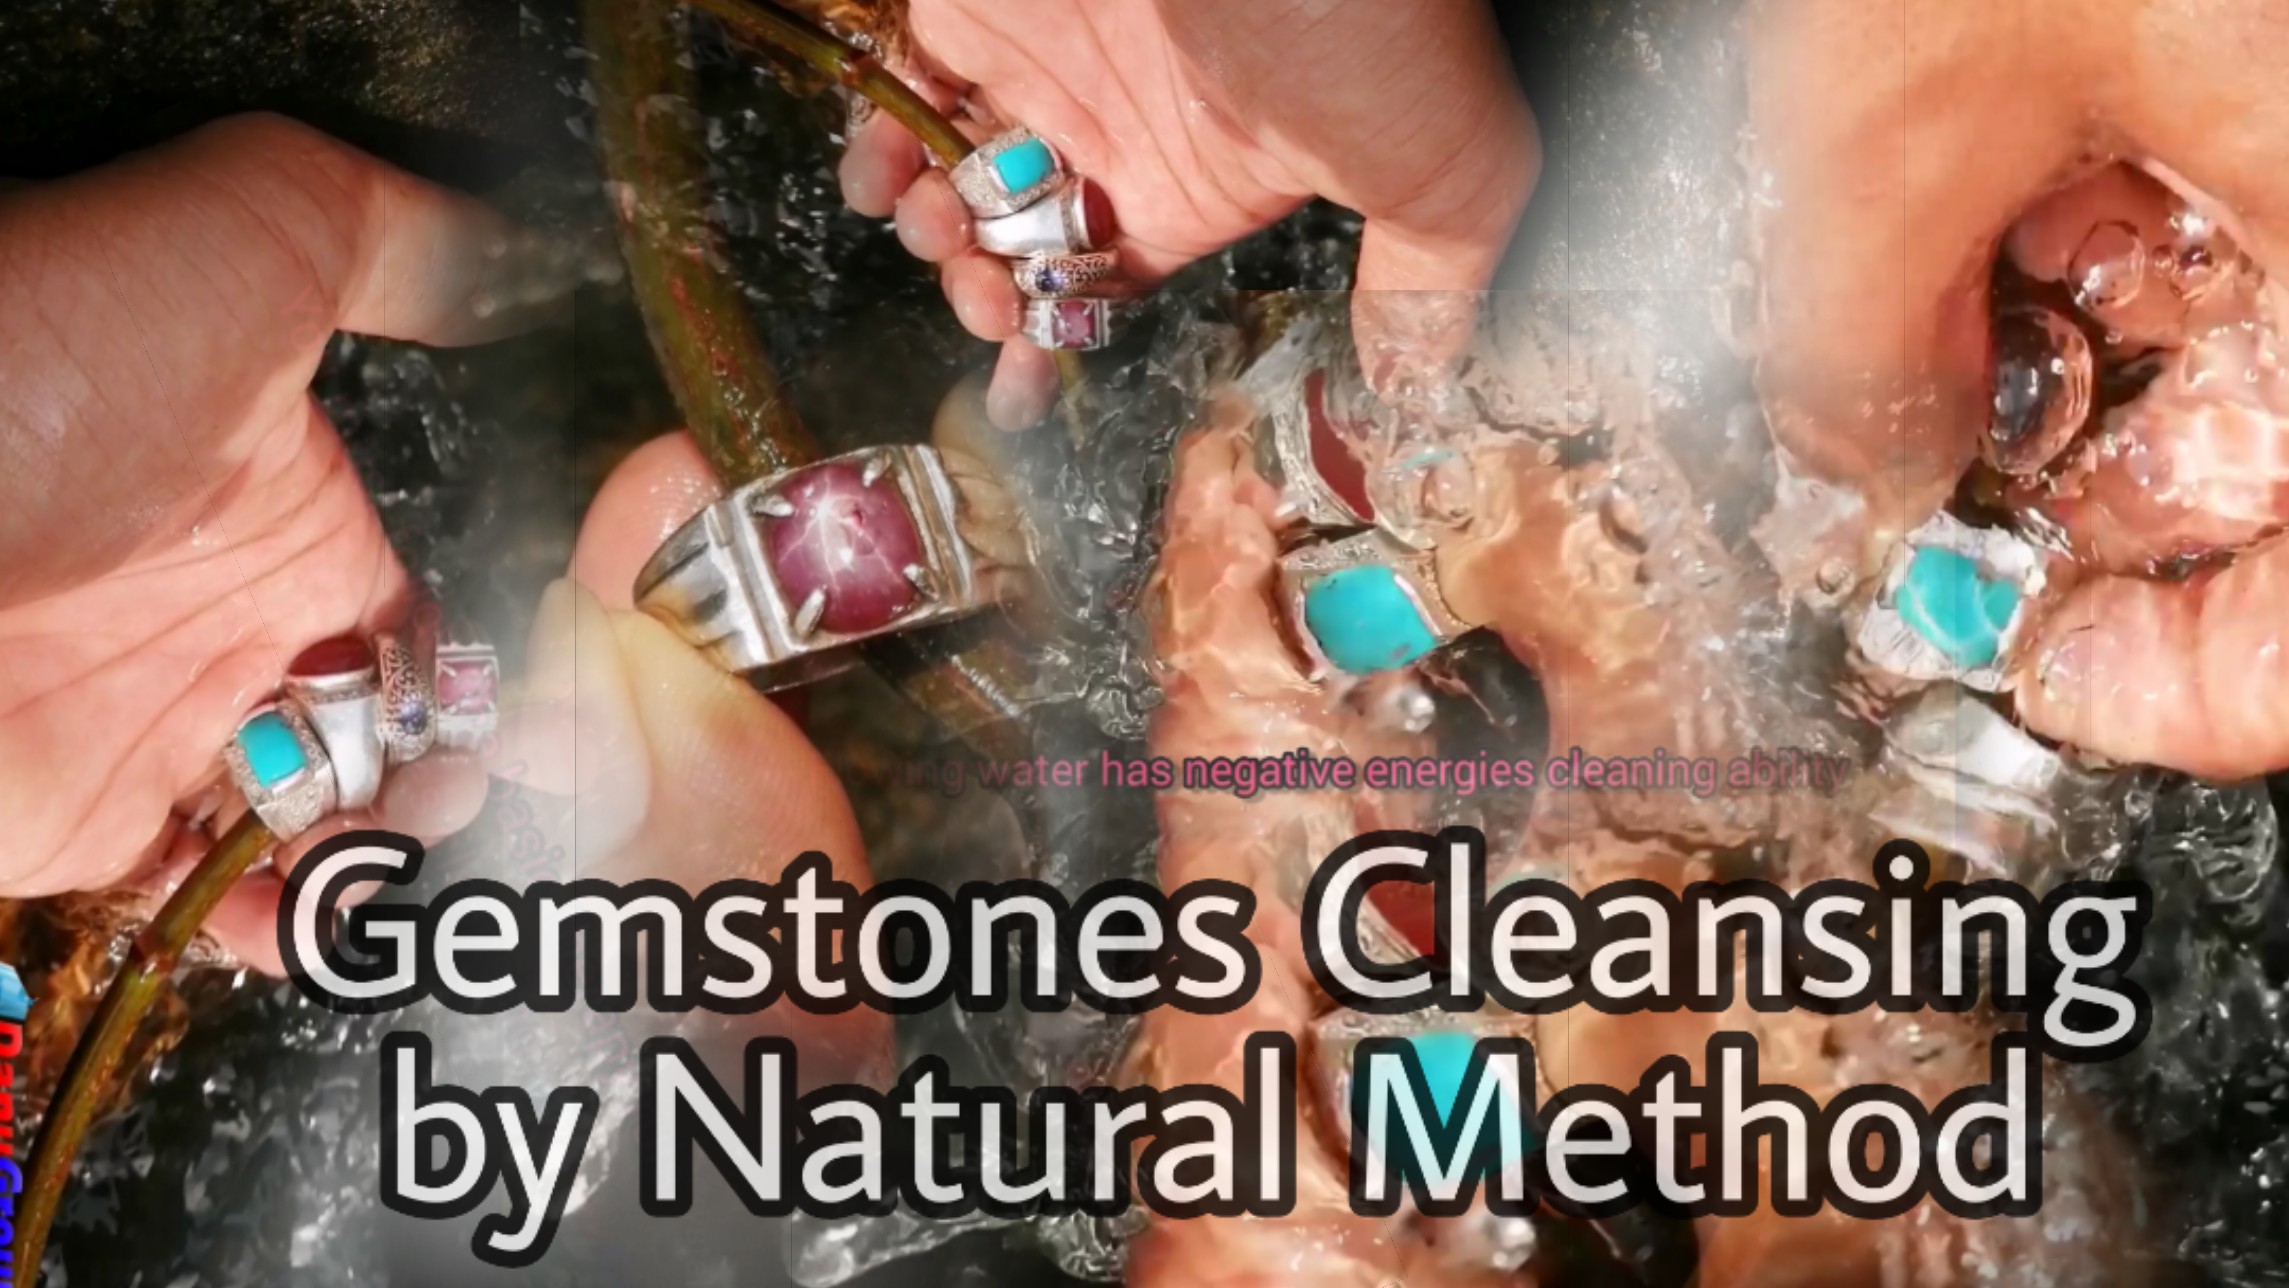 Gemstones Cleansing by Natural Method